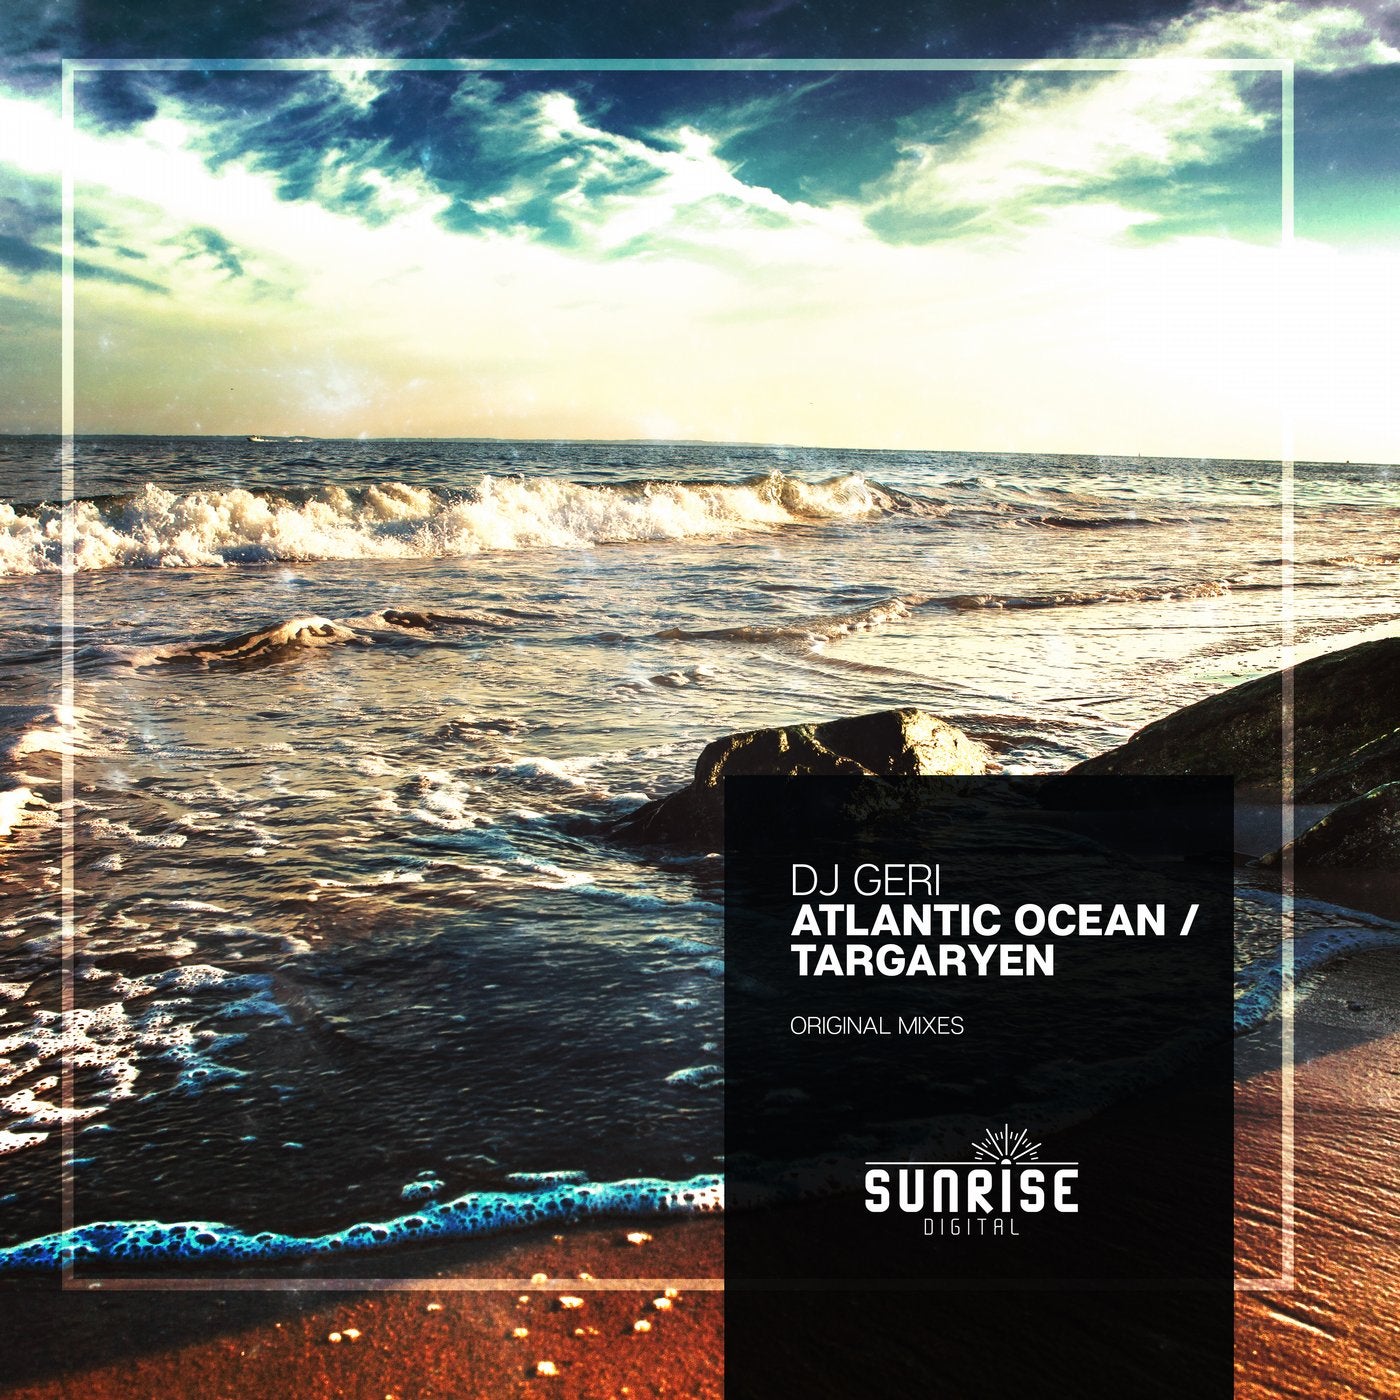 Atlantic Ocean / Targaryen EP